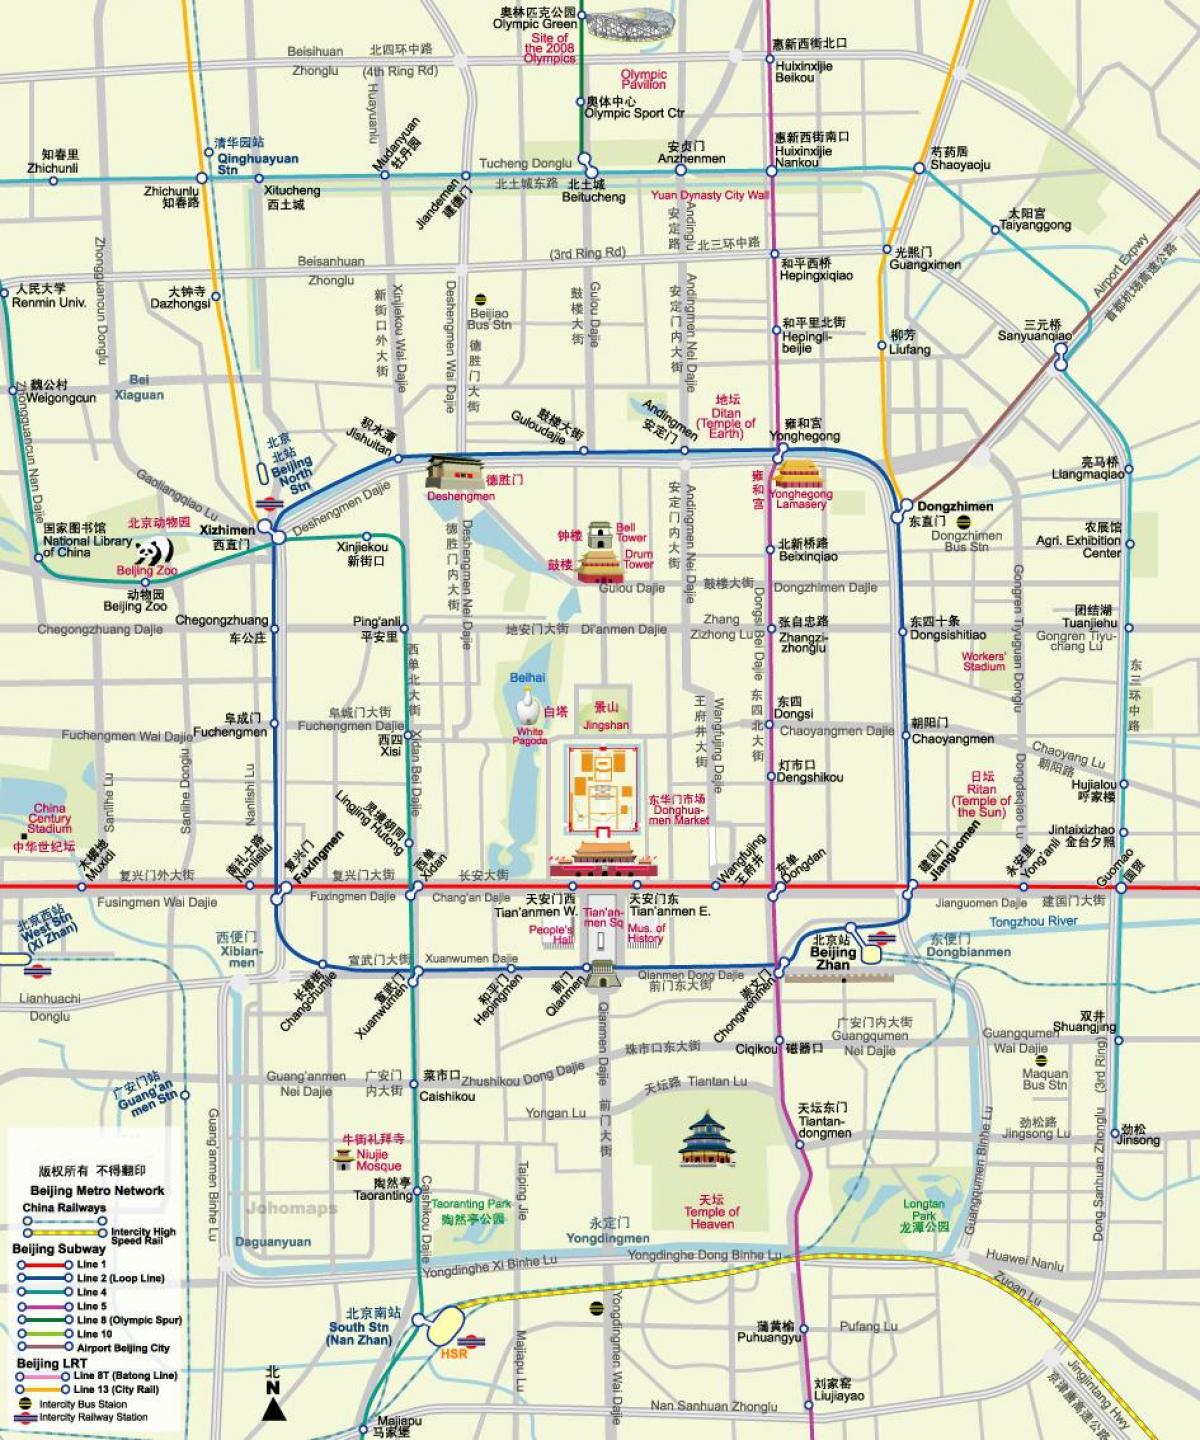 térkép Pekingi metró térkép látnivalók